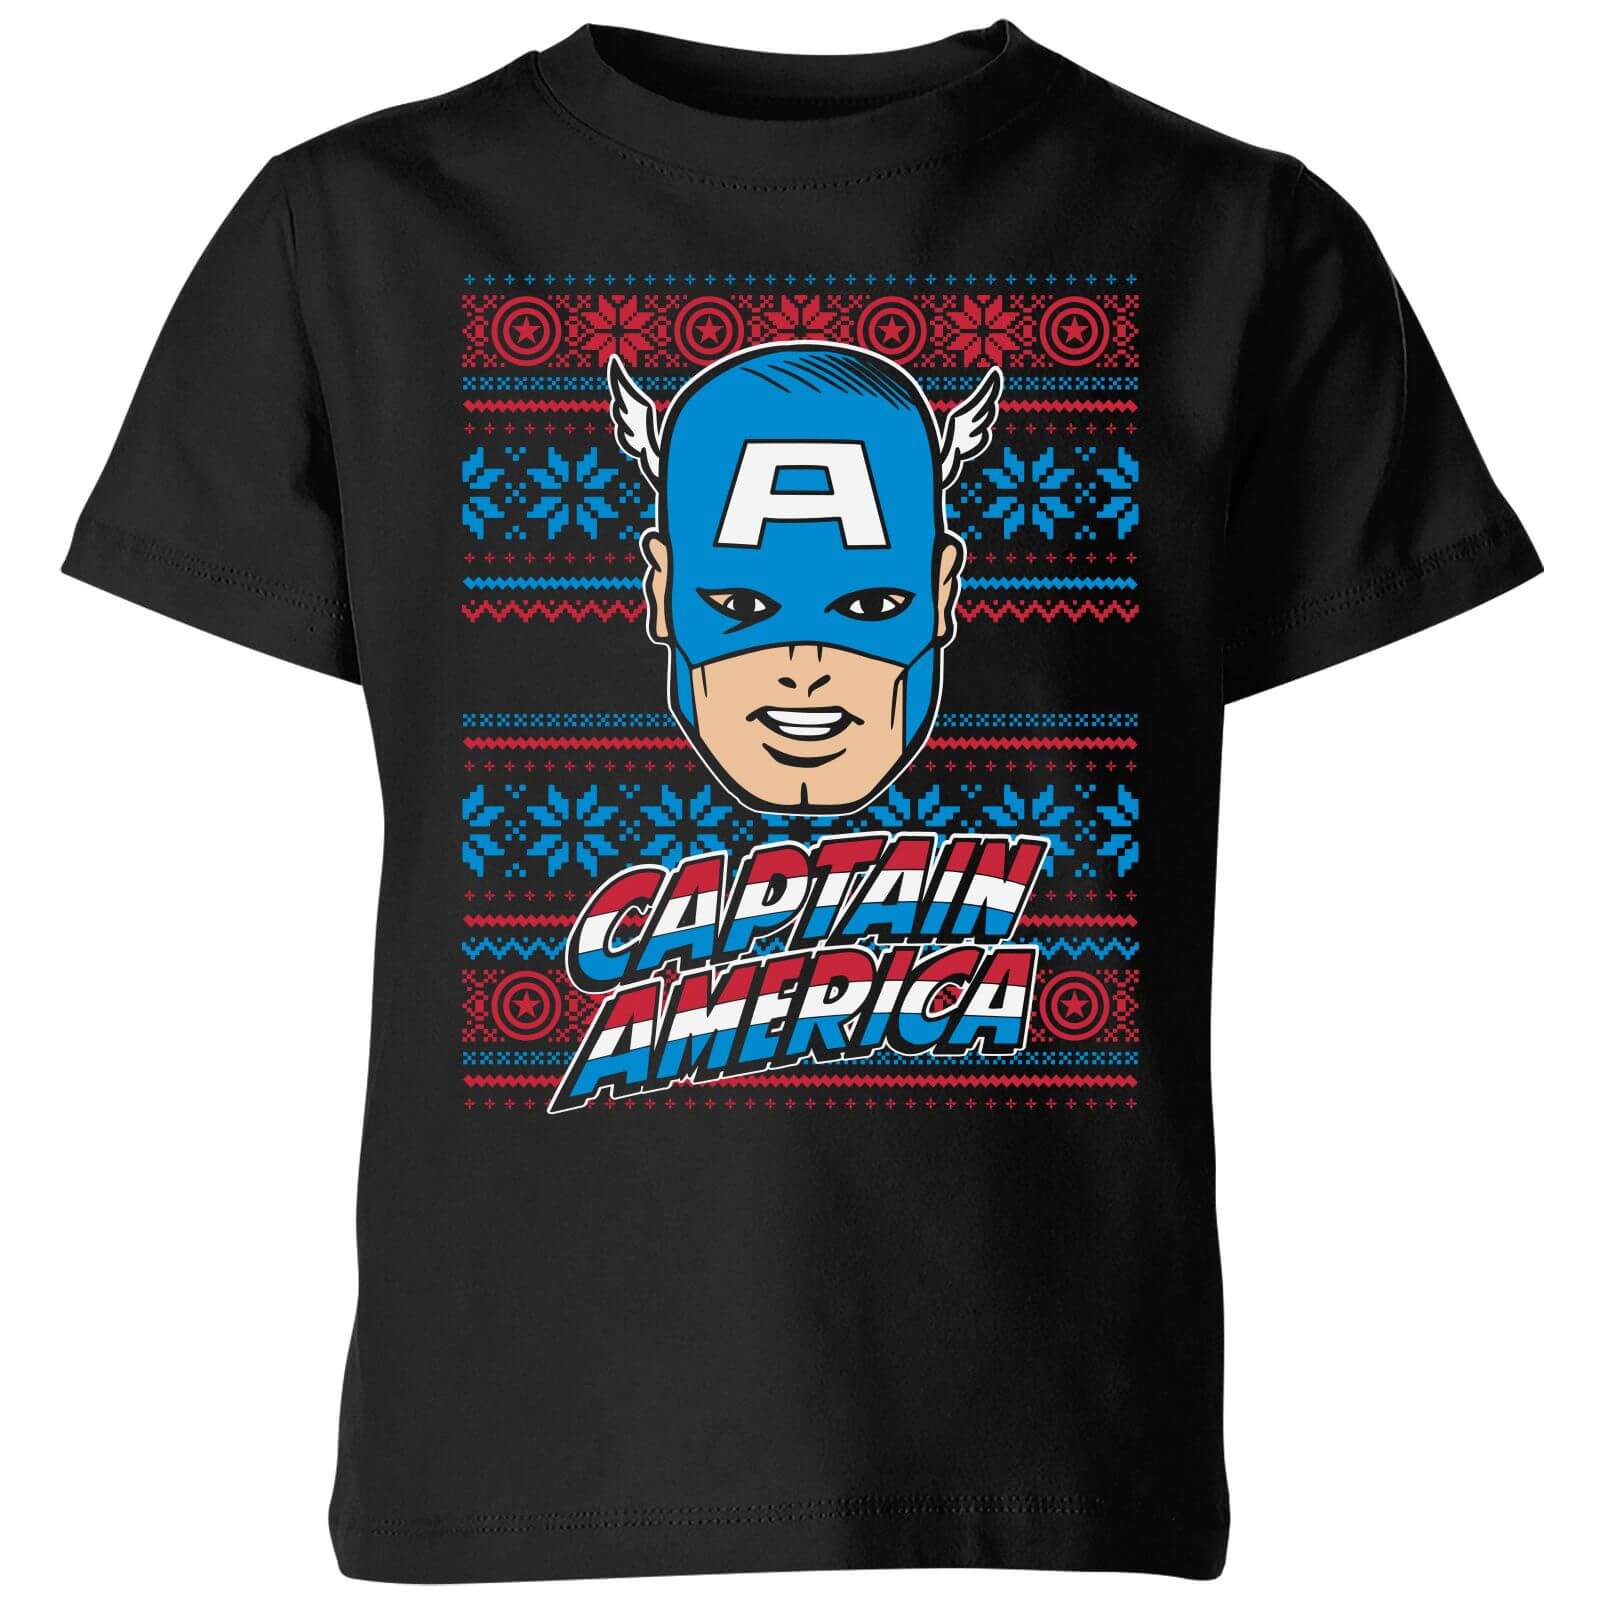 Marvel Captain America Face Kids' Christmas T-Shirt - Black - 9-10 Years - Black